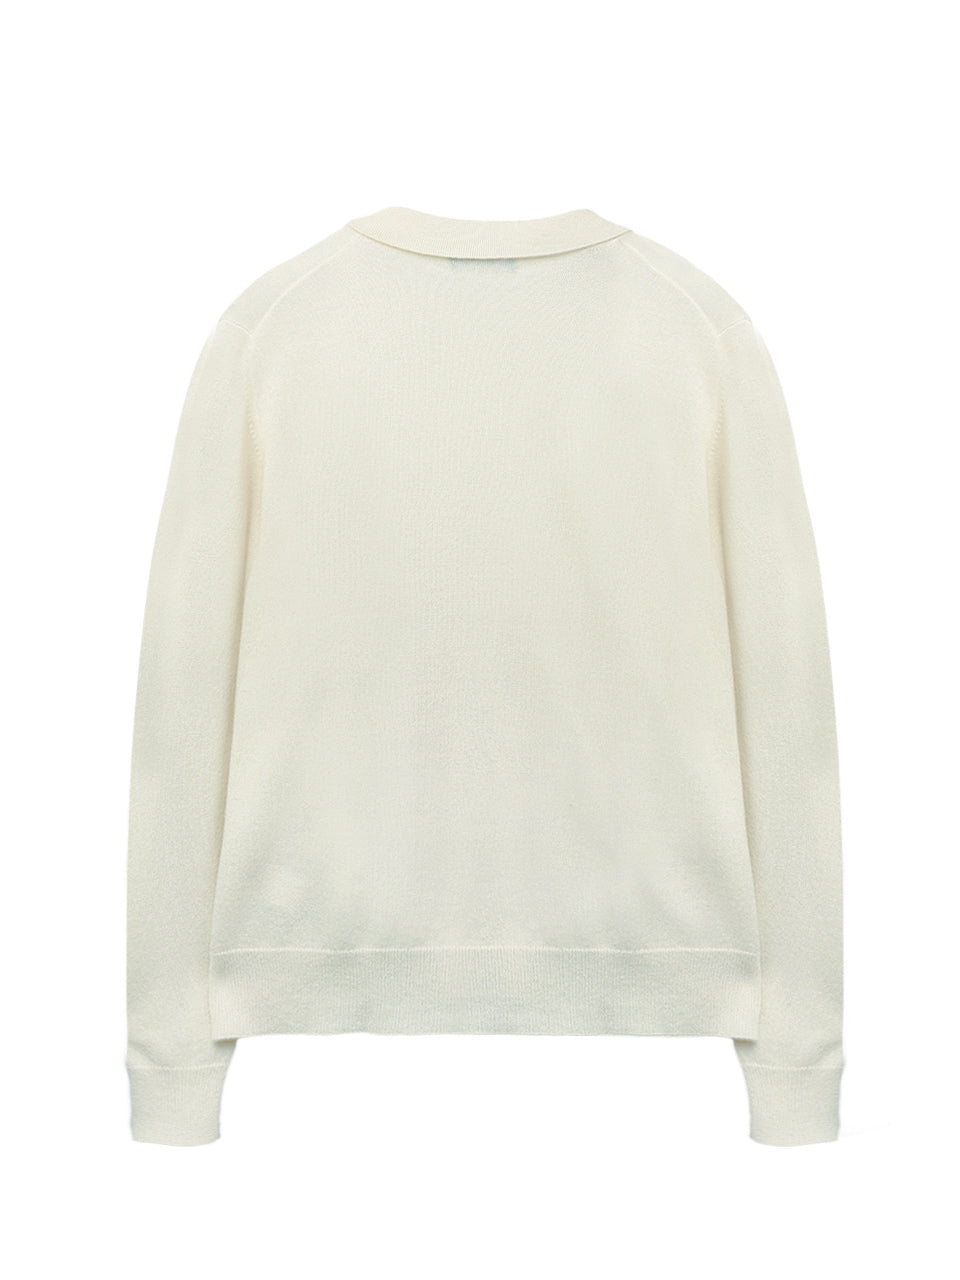 Men Polo Sweater_Vintage White